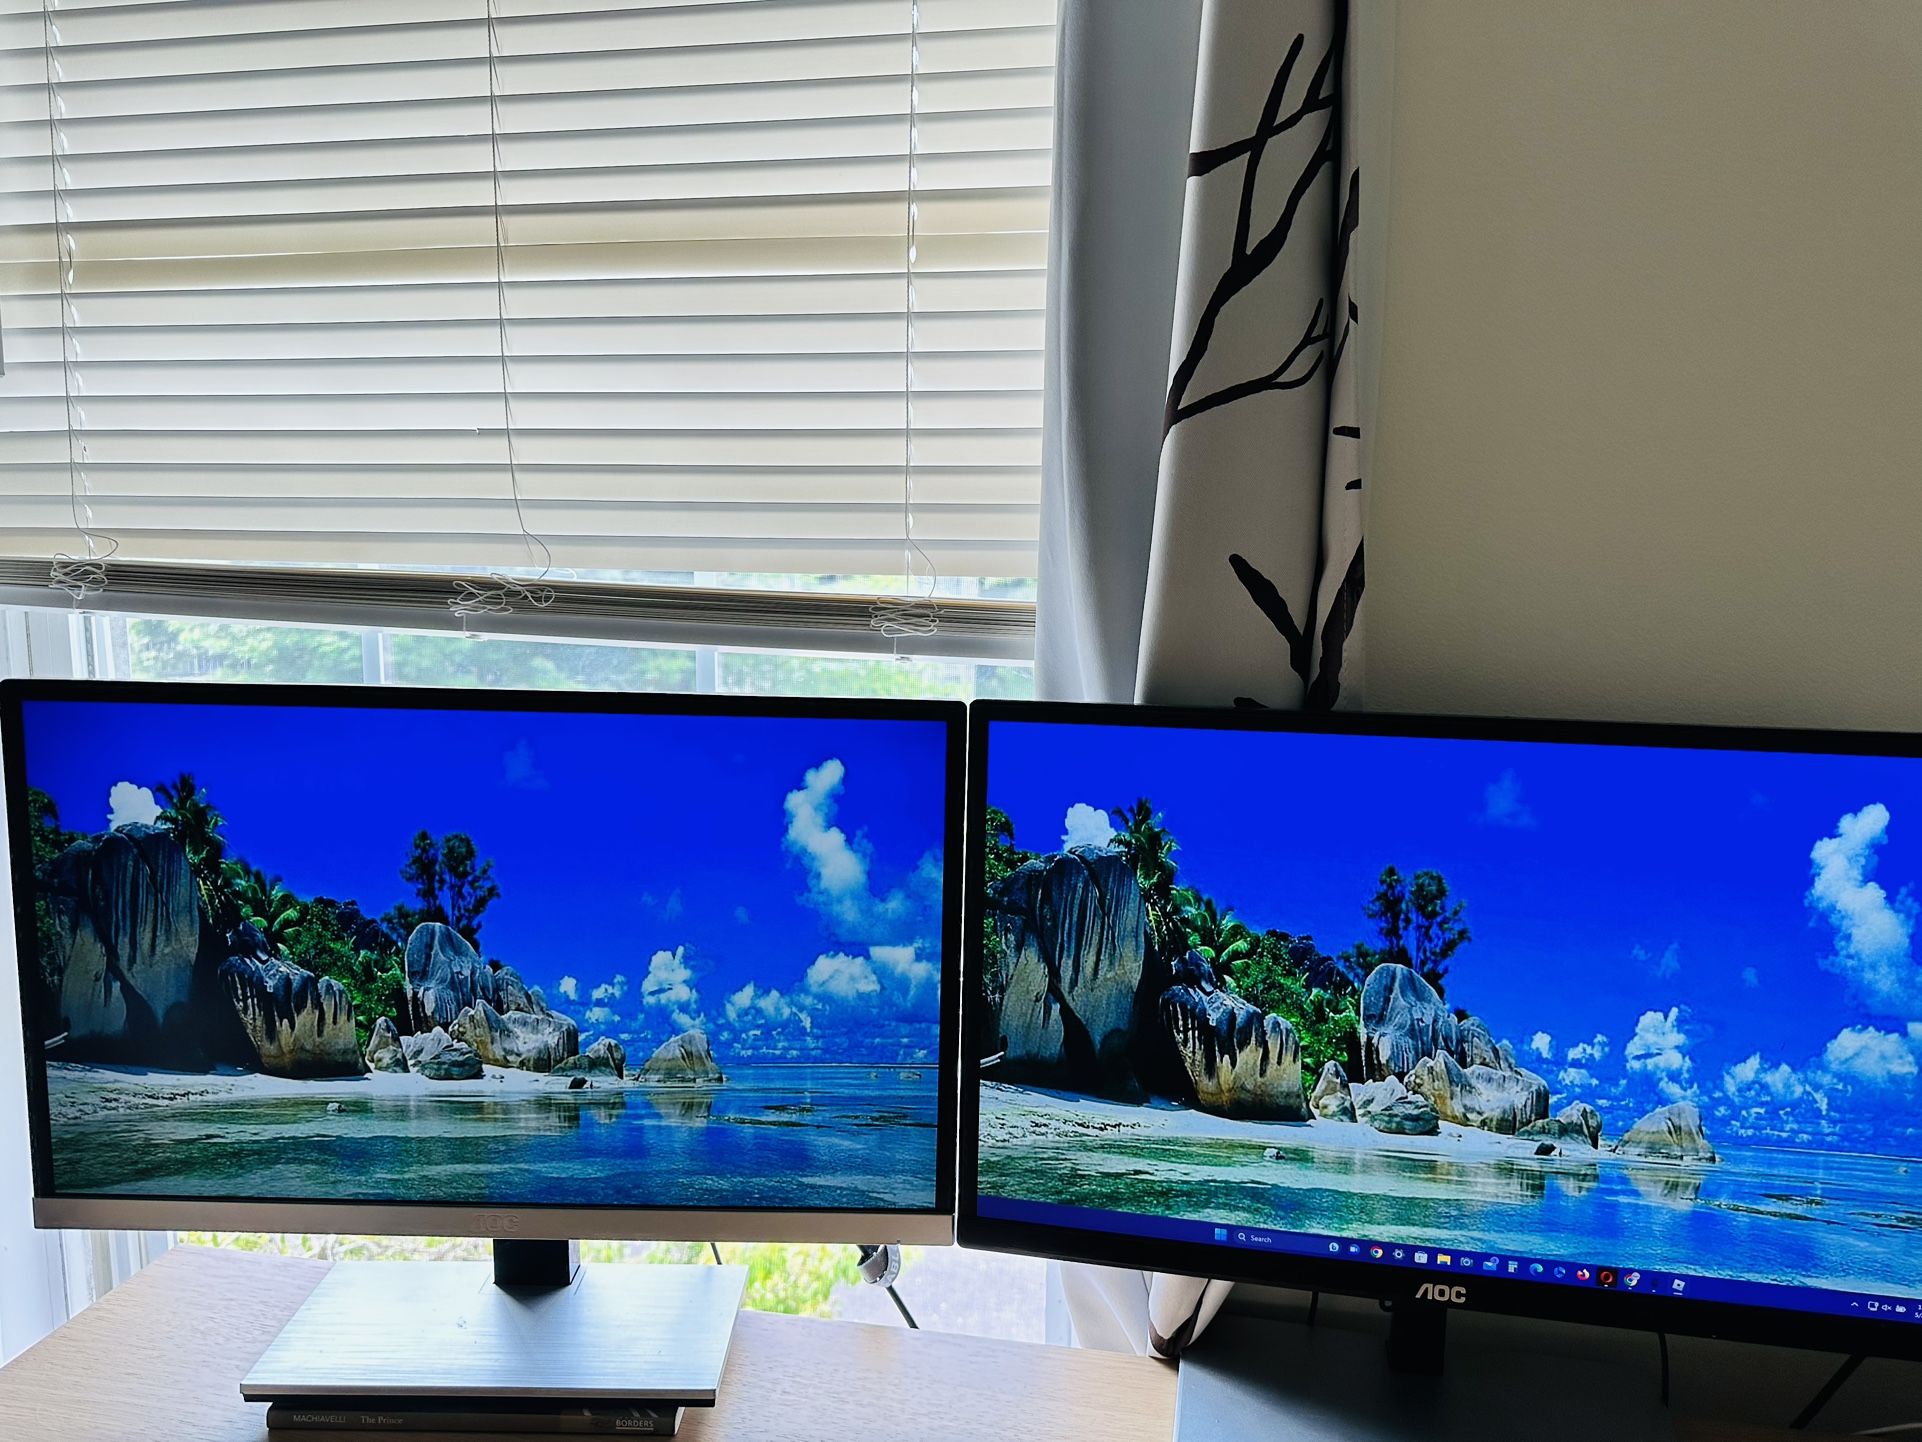 Two AOC Monitors & One LG Monitors